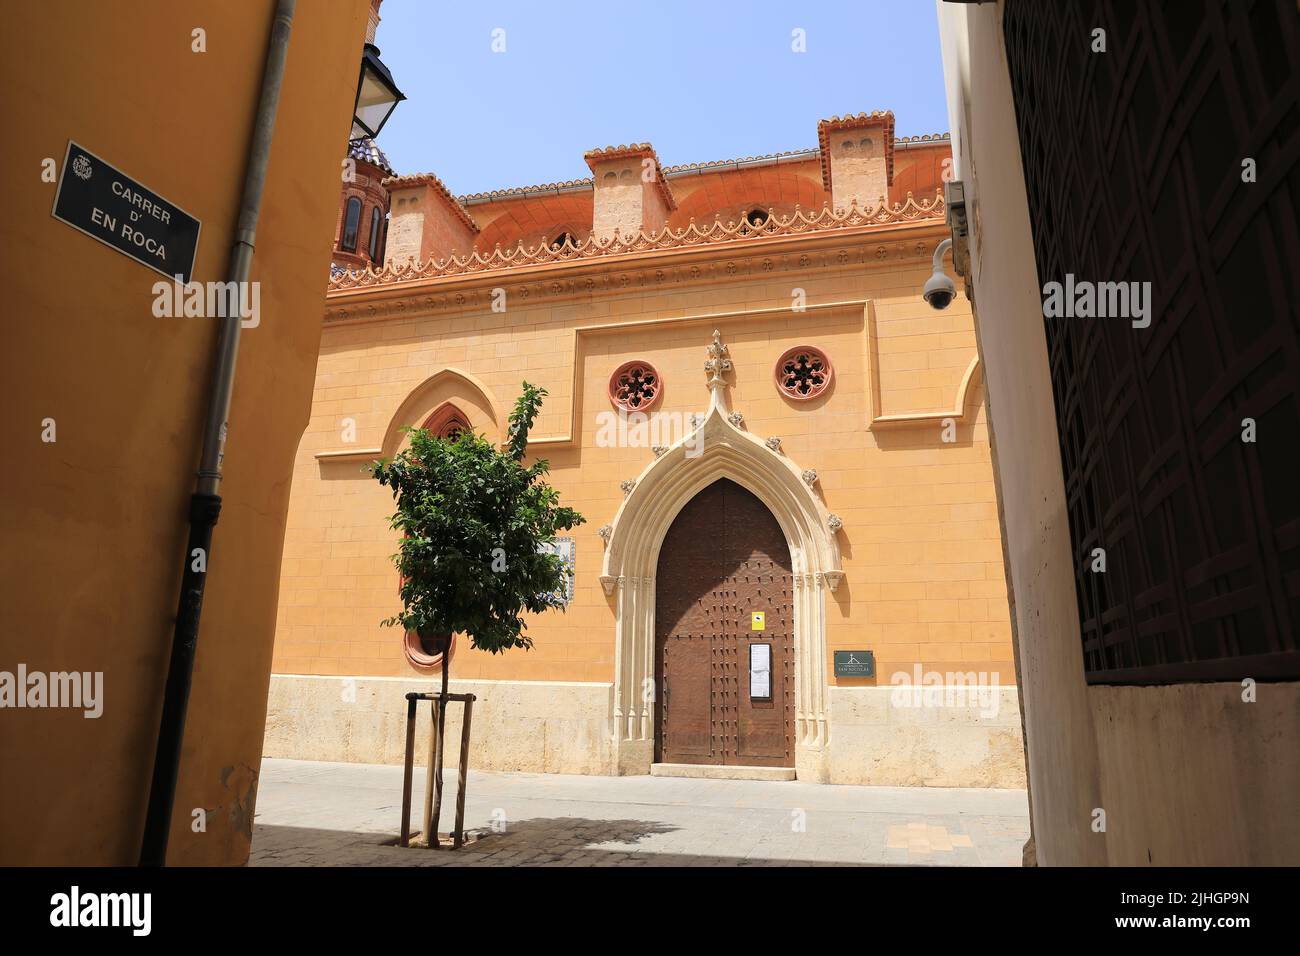 Hermosa iglesia de San Nicolás de Bari y San Pedro Martir, de estilo gótico valenciano RC, conocida como la Capilla Sixtina de Valenca, en España, Europa Foto de stock